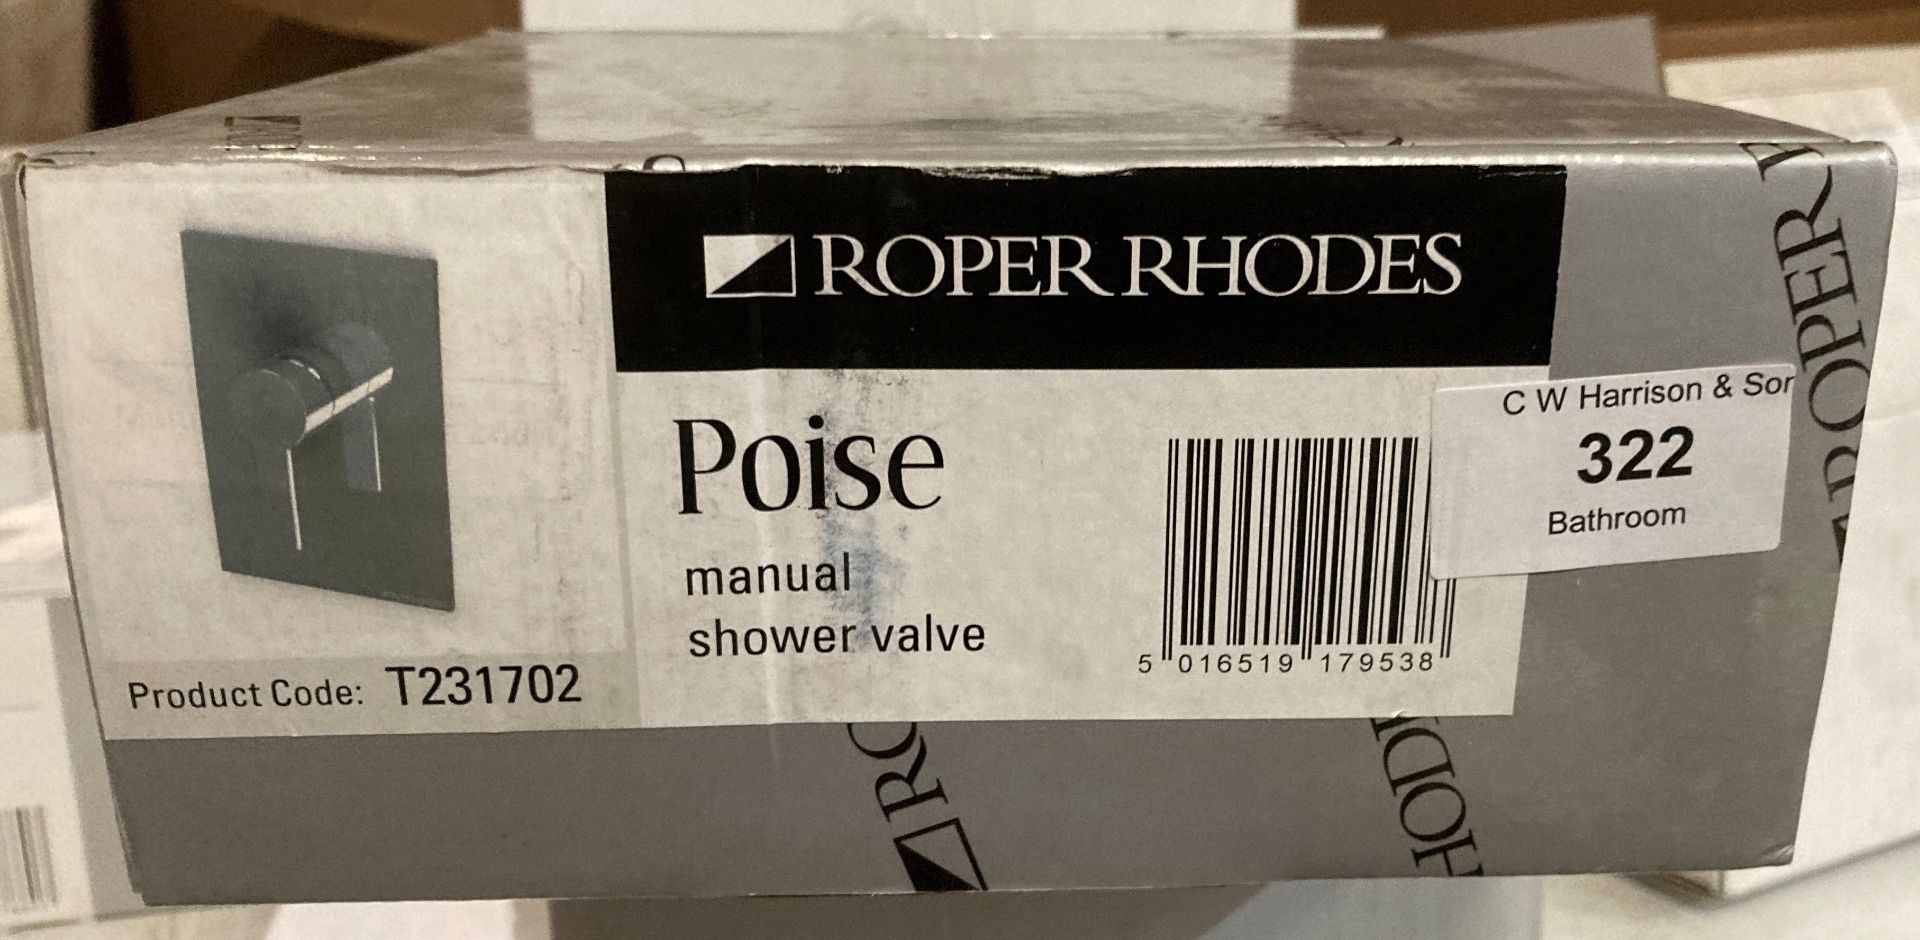 Roper Rhodes Poise manual shower valve (MA1 RACK)